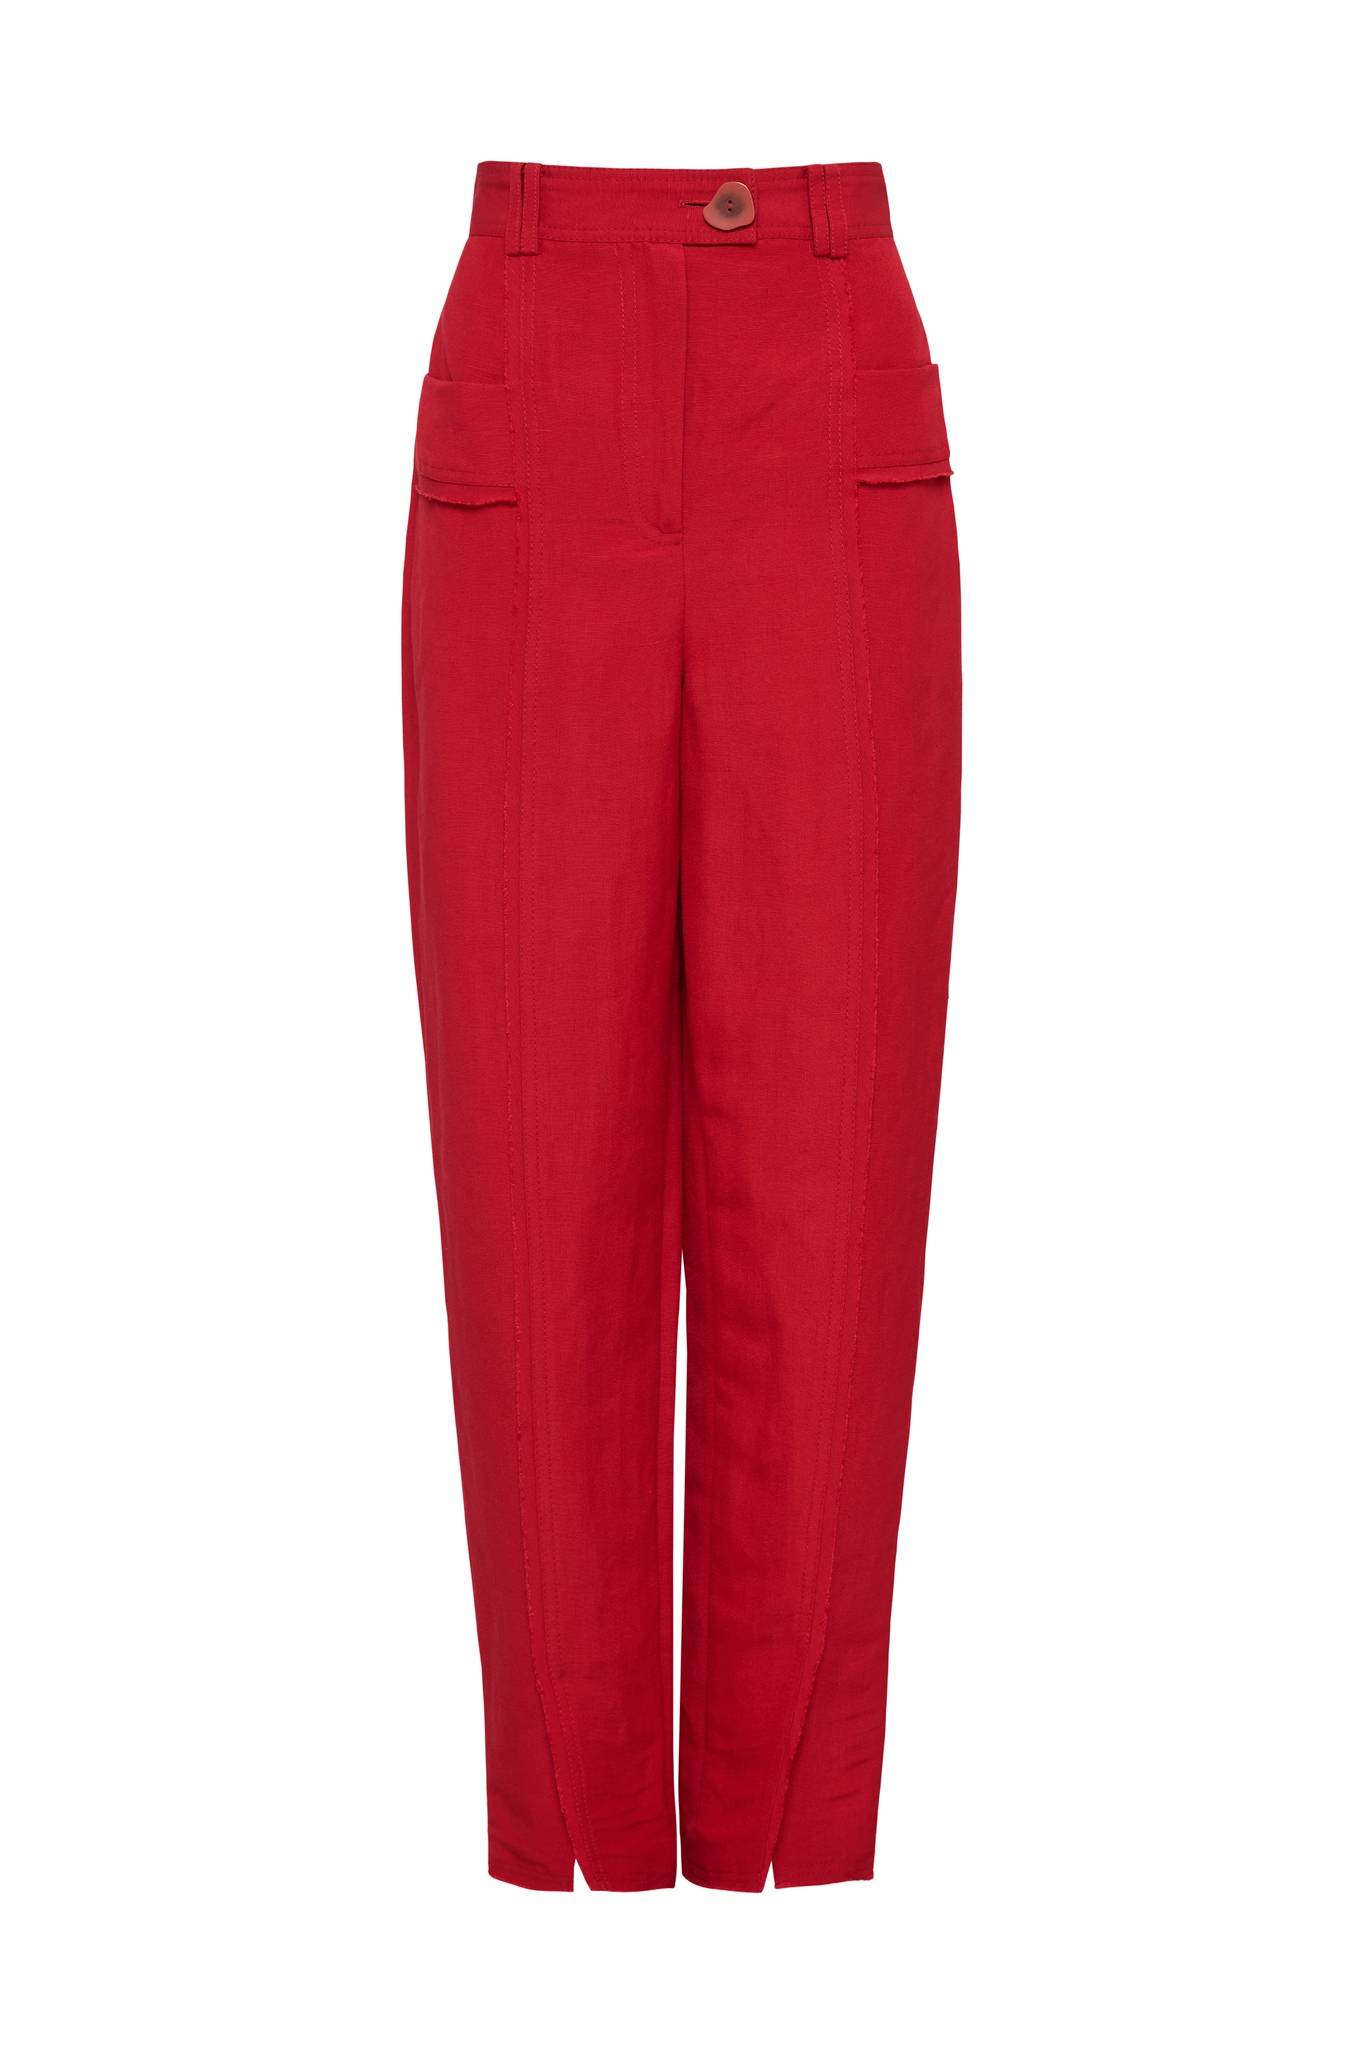 Red women's pants